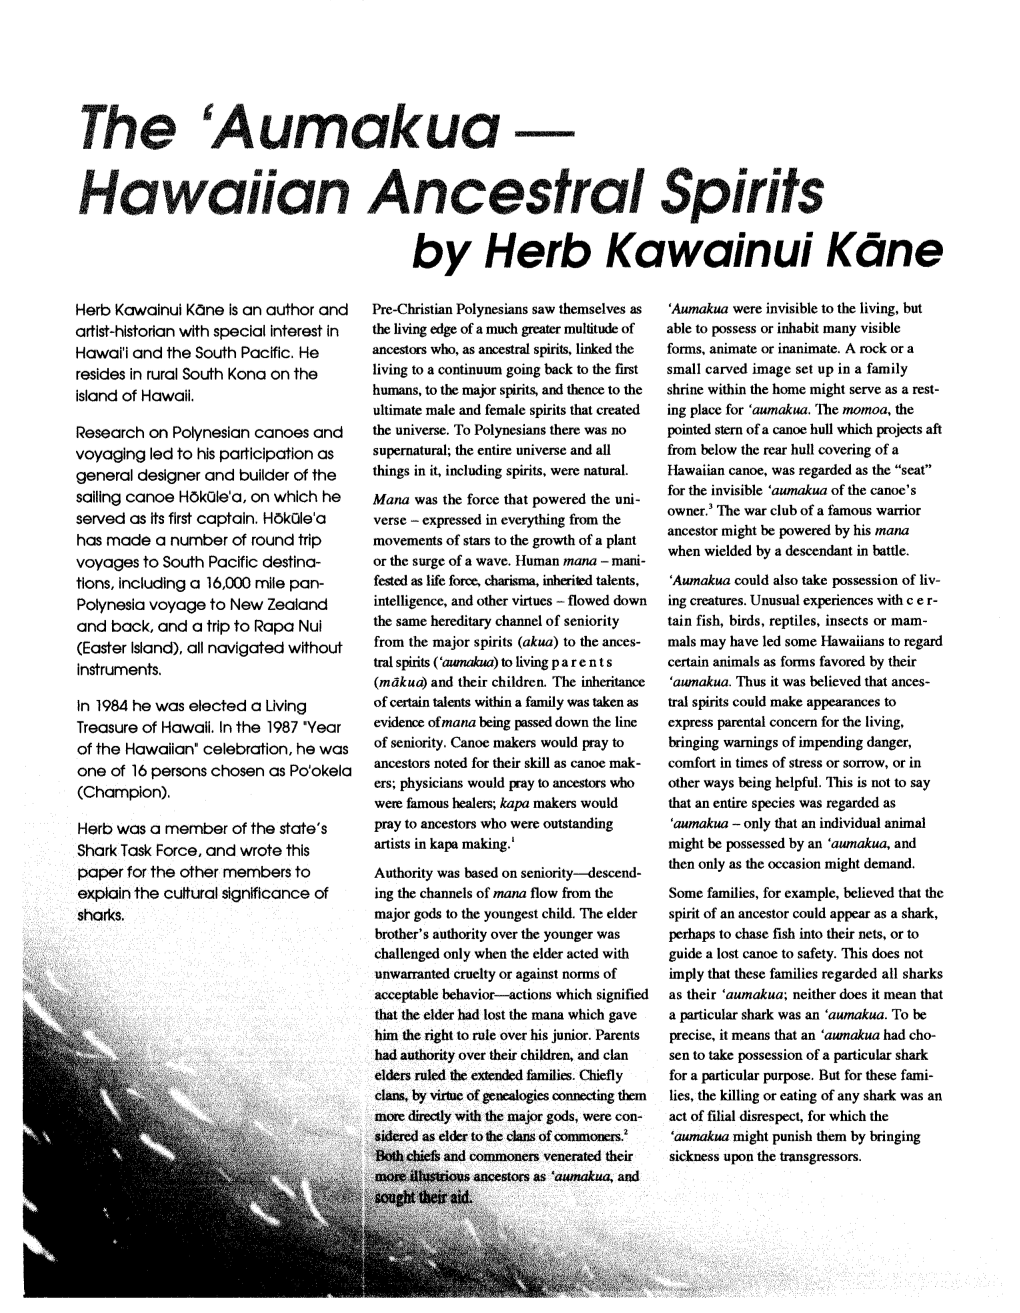 The 'Aumakua Hawaiian Ancestral Spirits by Herb Kawainui Kane